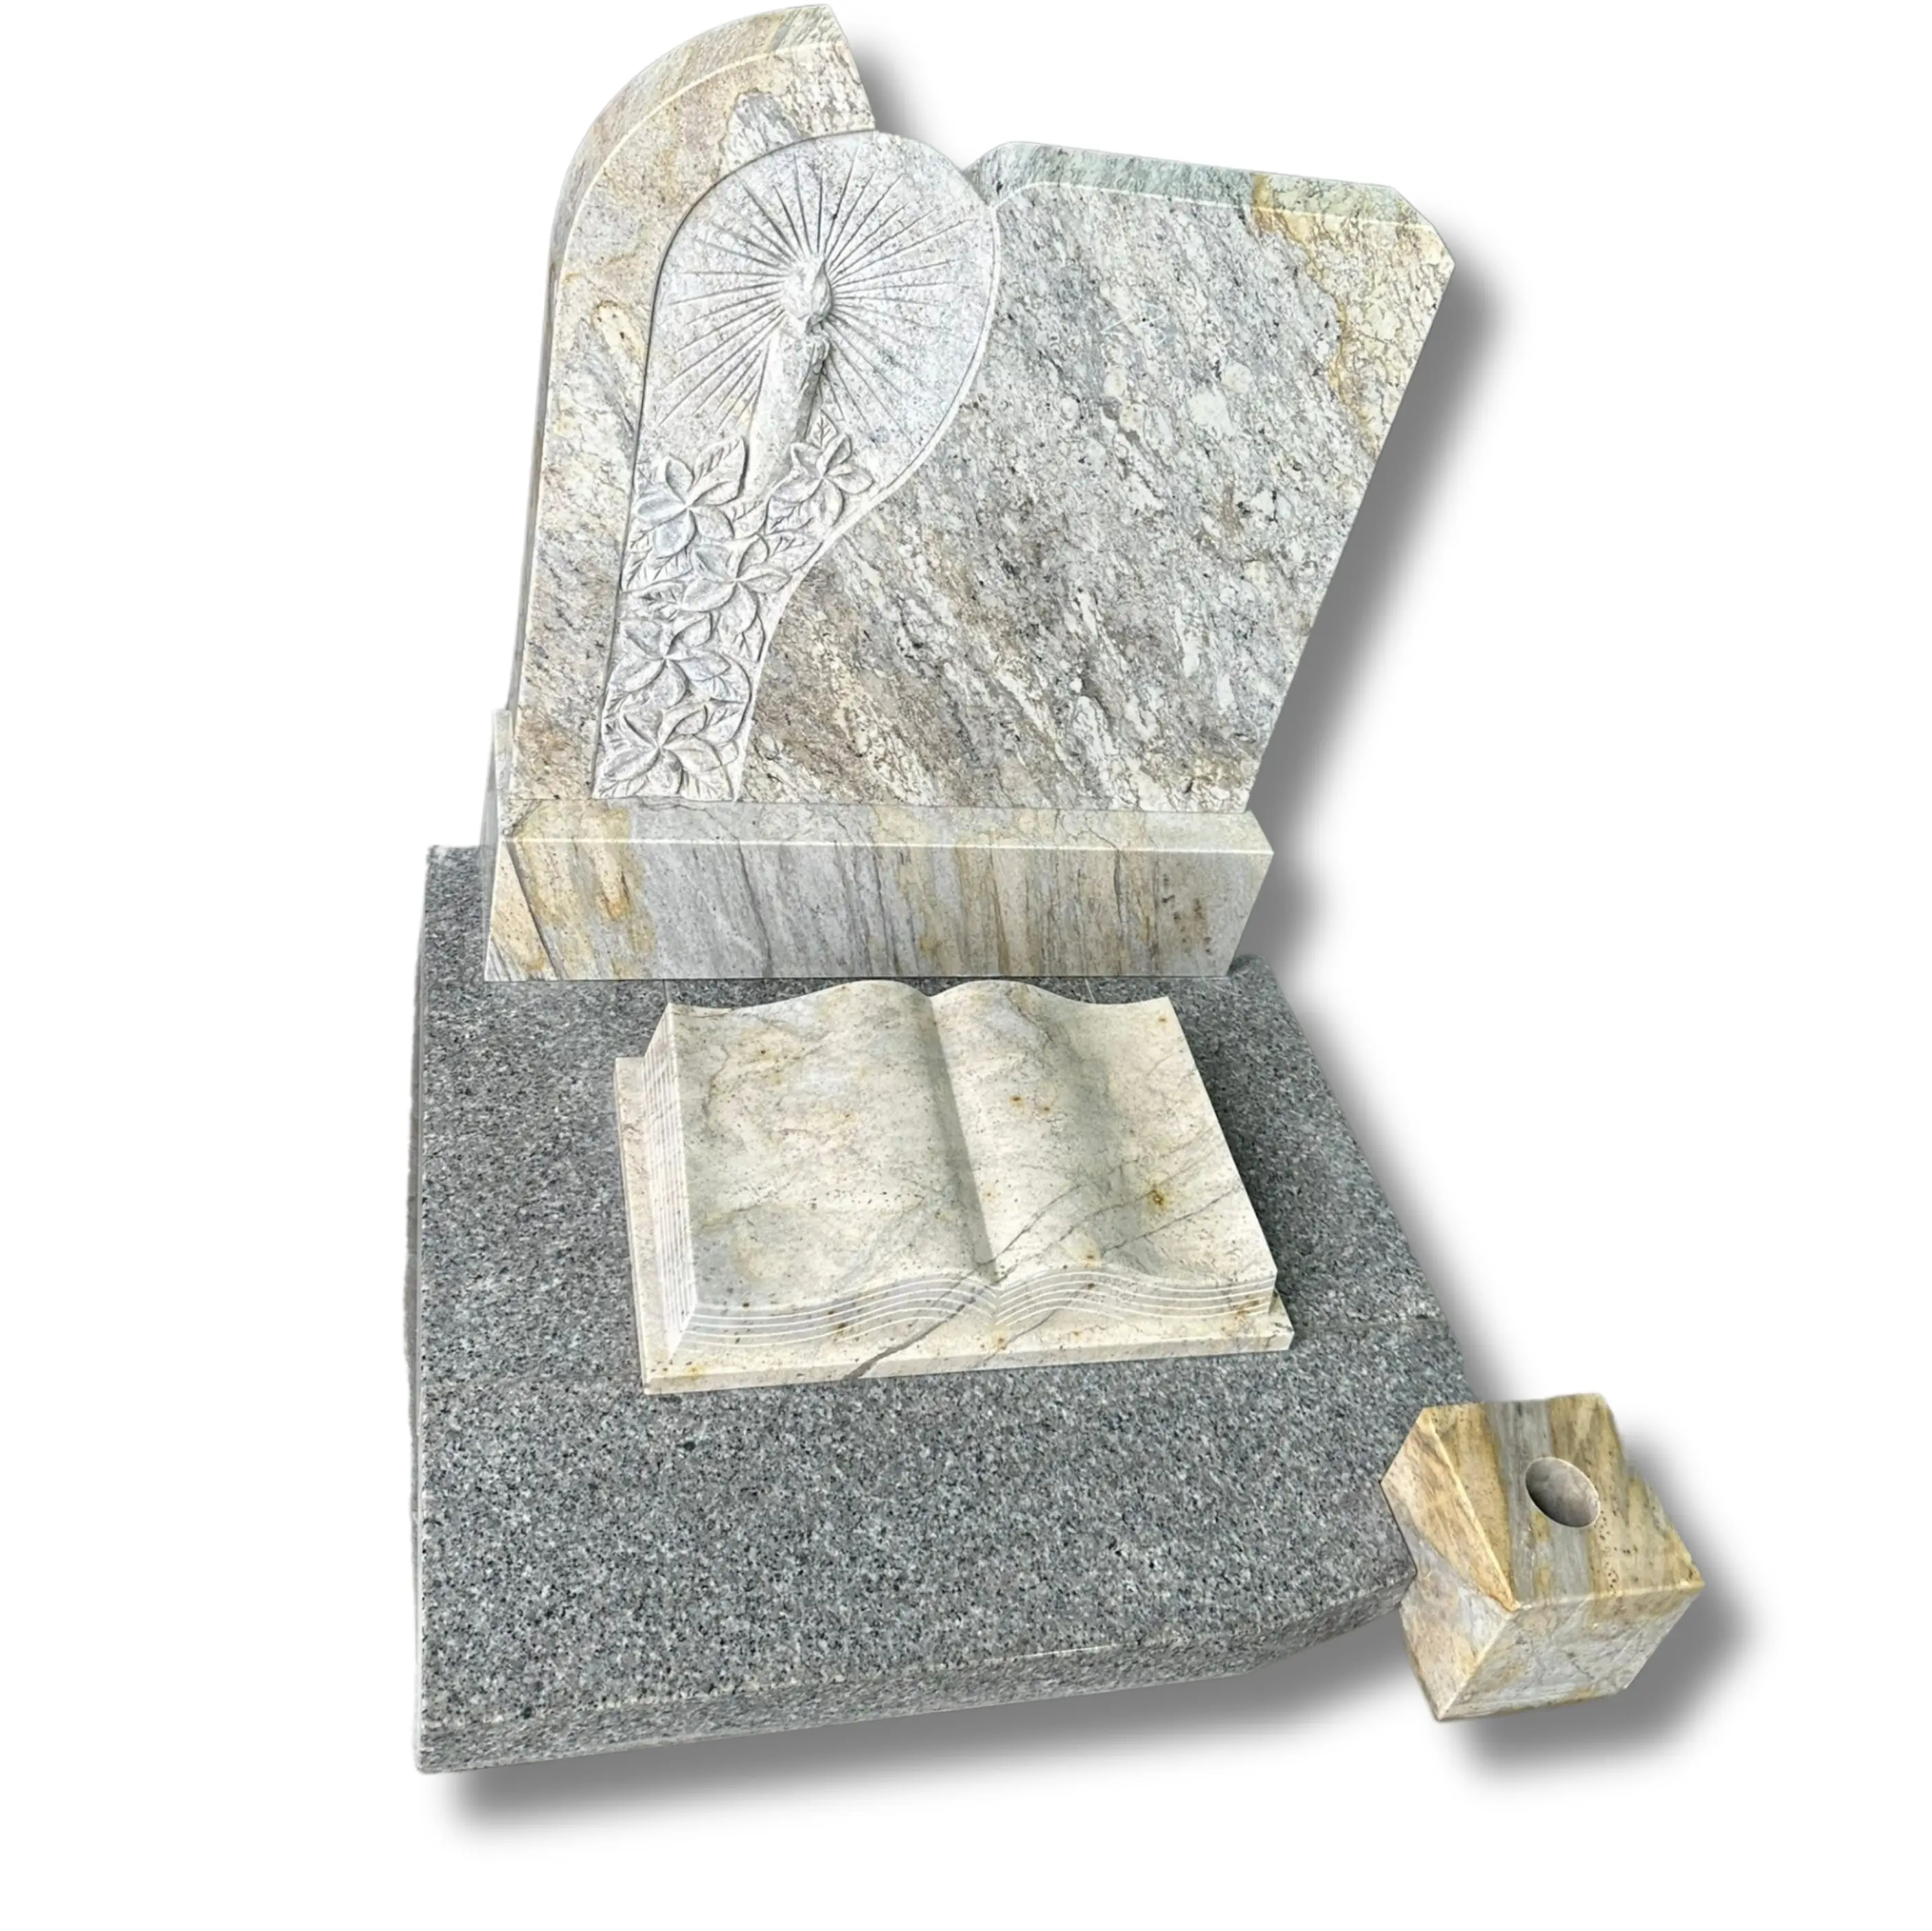 Ucuz fiyat mezar taşları mezar taşı ve anıt mezarlığı toptancılar satılık granit mezar, mezar taşları siyah granit